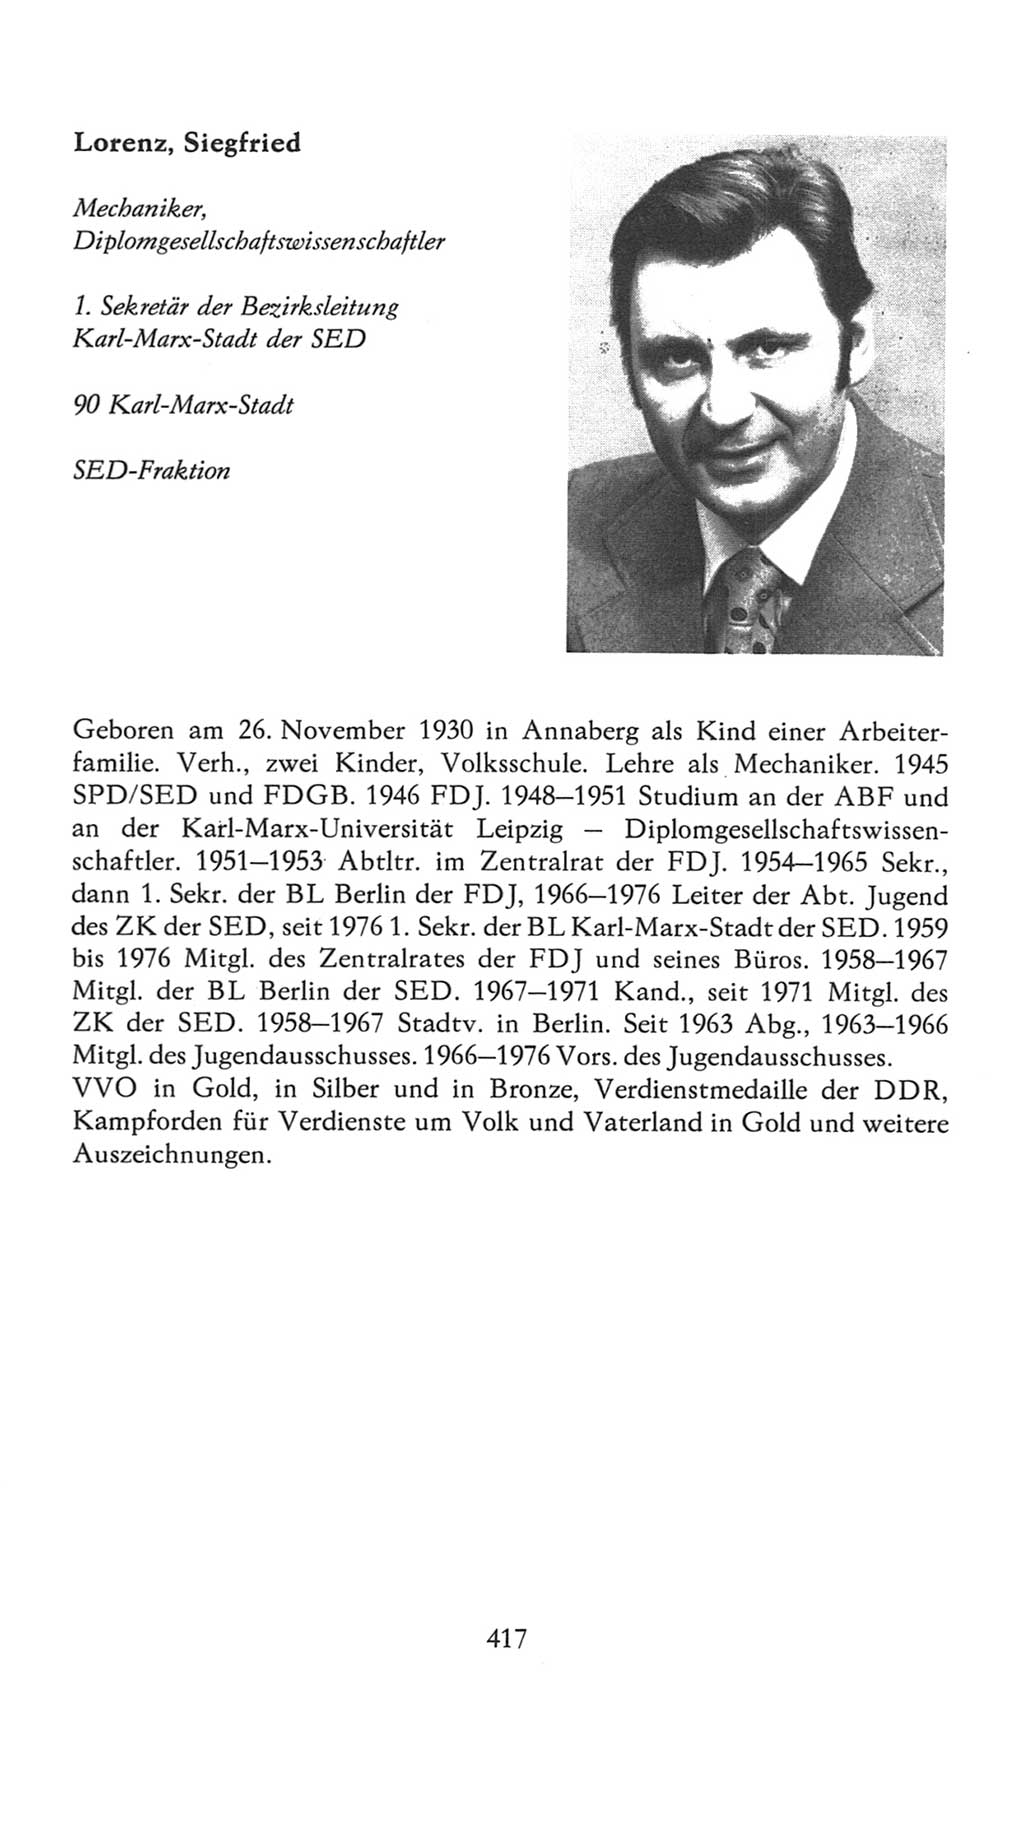 Volkskammer (VK) der Deutschen Demokratischen Republik (DDR), 7. Wahlperiode 1976-1981, Seite 417 (VK. DDR 7. WP. 1976-1981, S. 417)